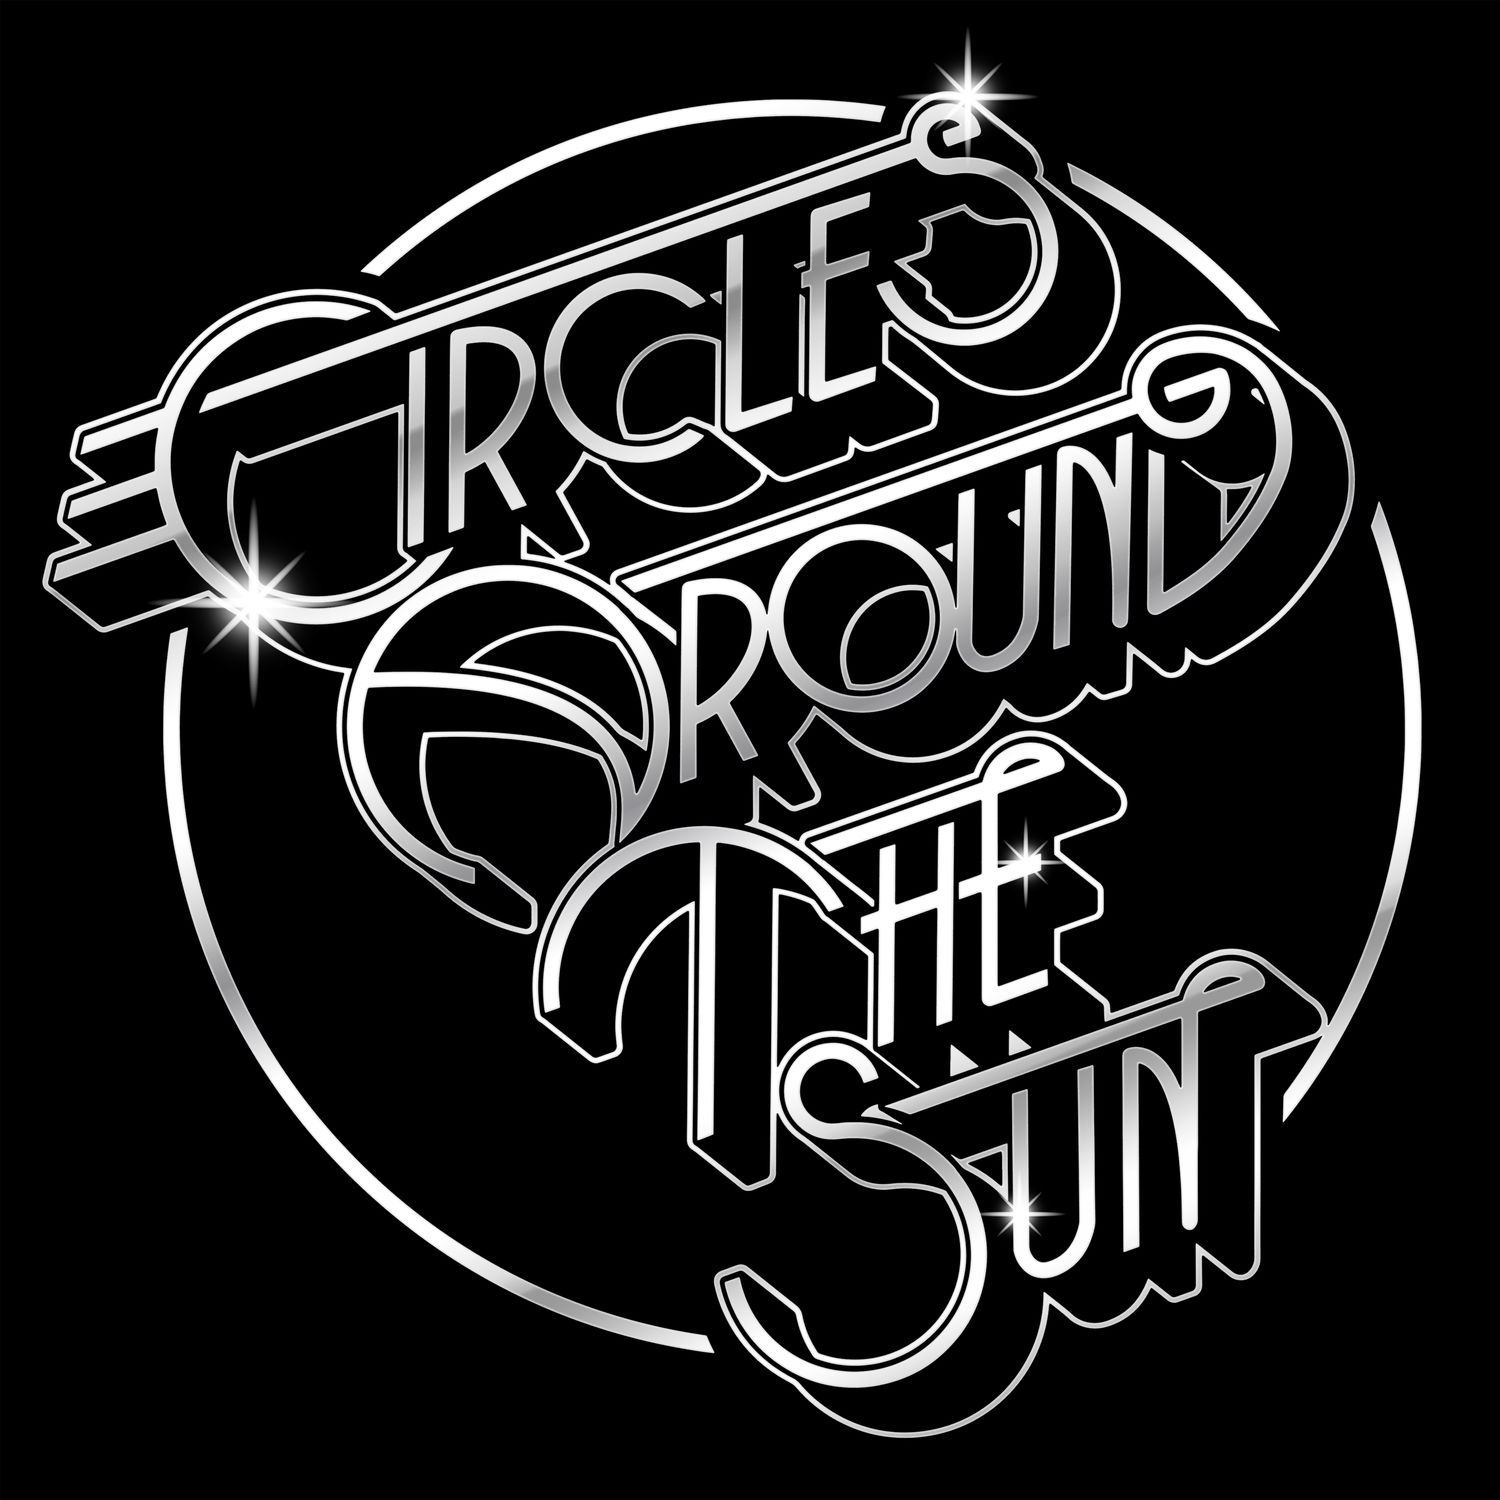 Circles Around The Sun – Circles Around The Sun (2020) [FLAC 24bit/48kHz]